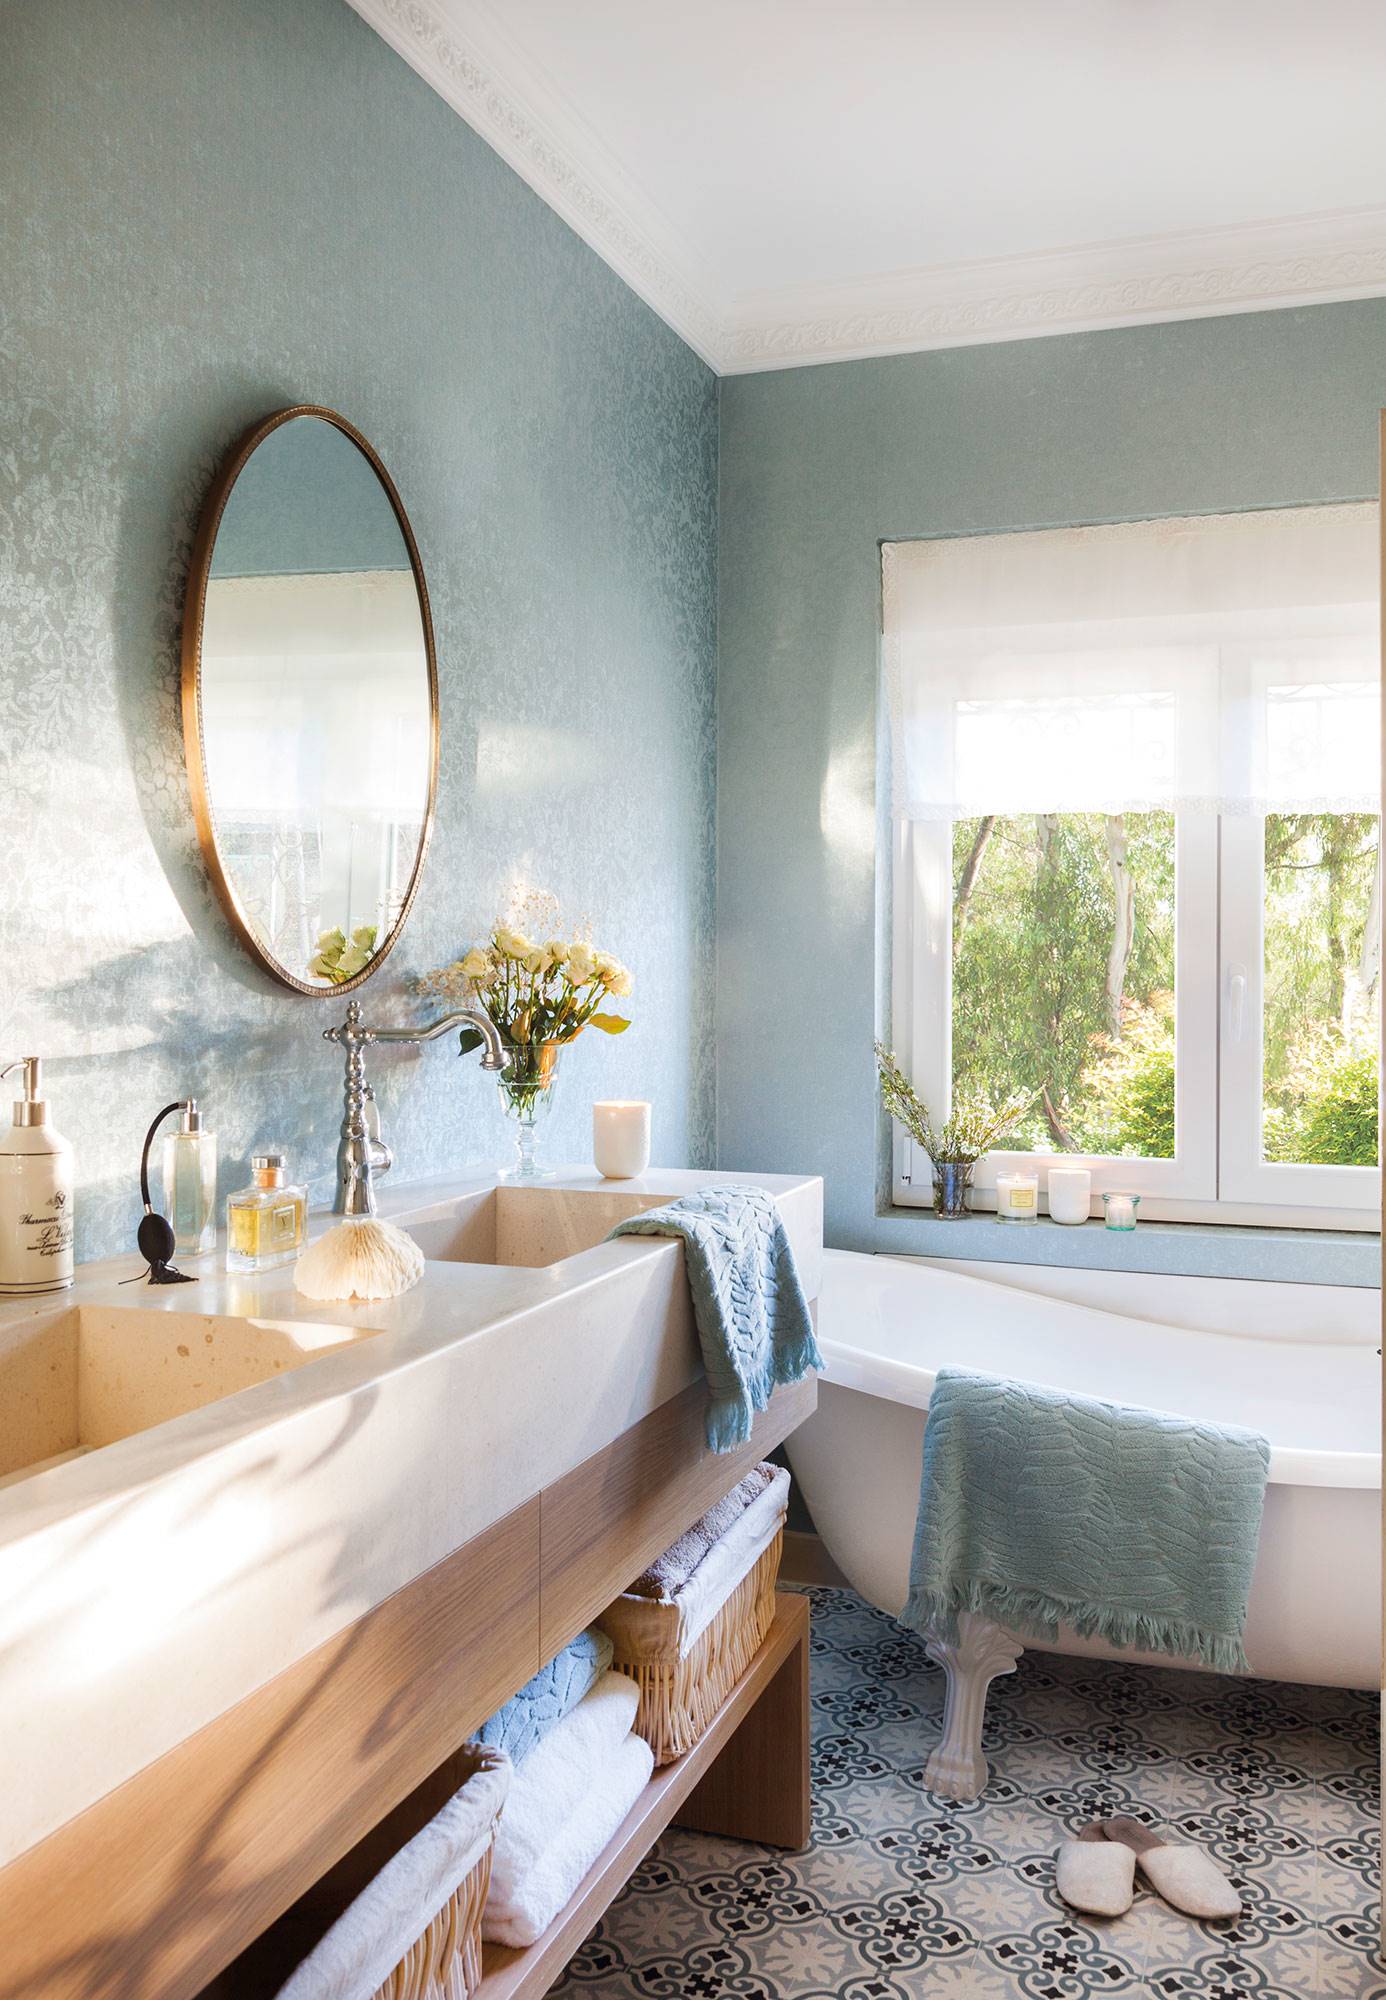 Baño con papel pintado efecto textil de color azul, mueble bajolavabo de madera y bañera con patas. 